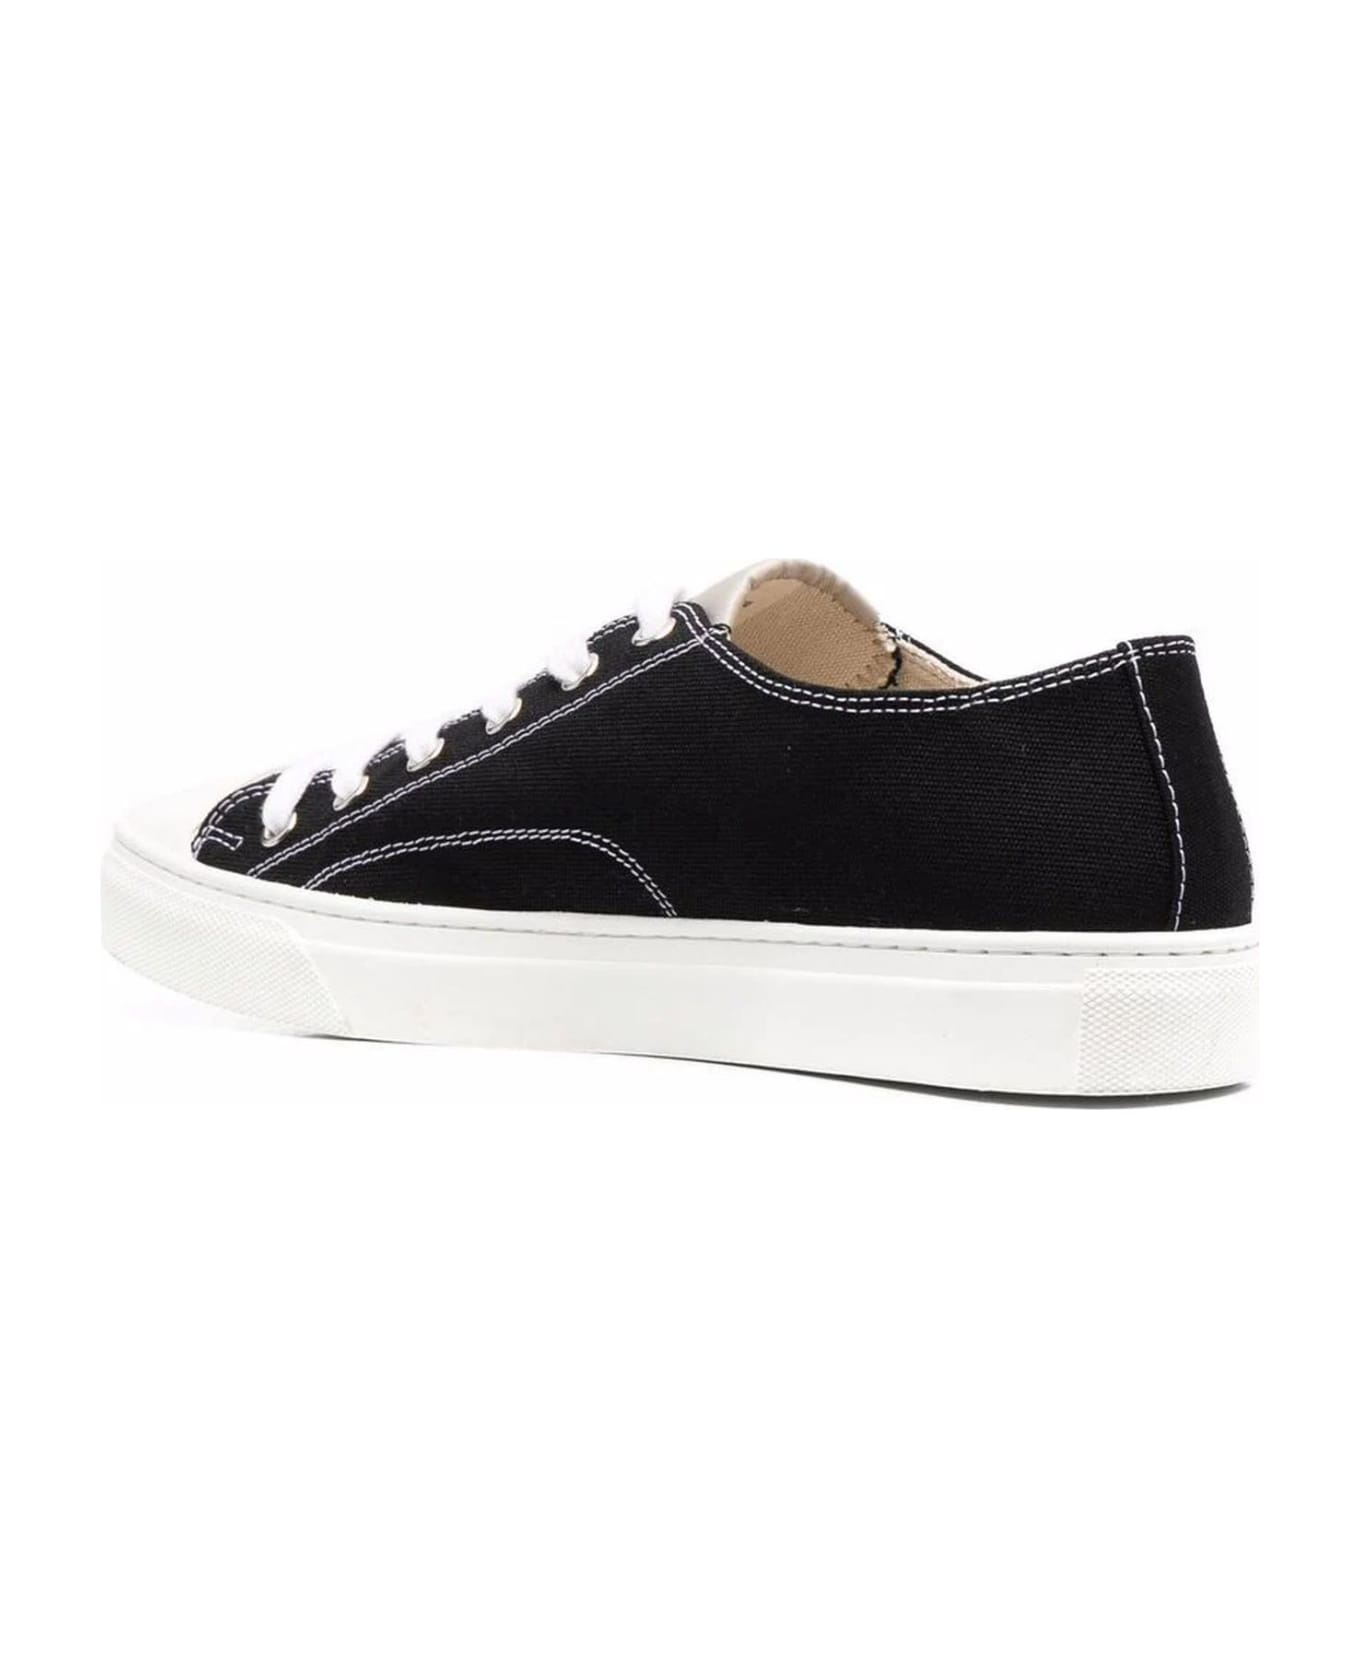 Vivienne Westwood Sneakers Black - Black